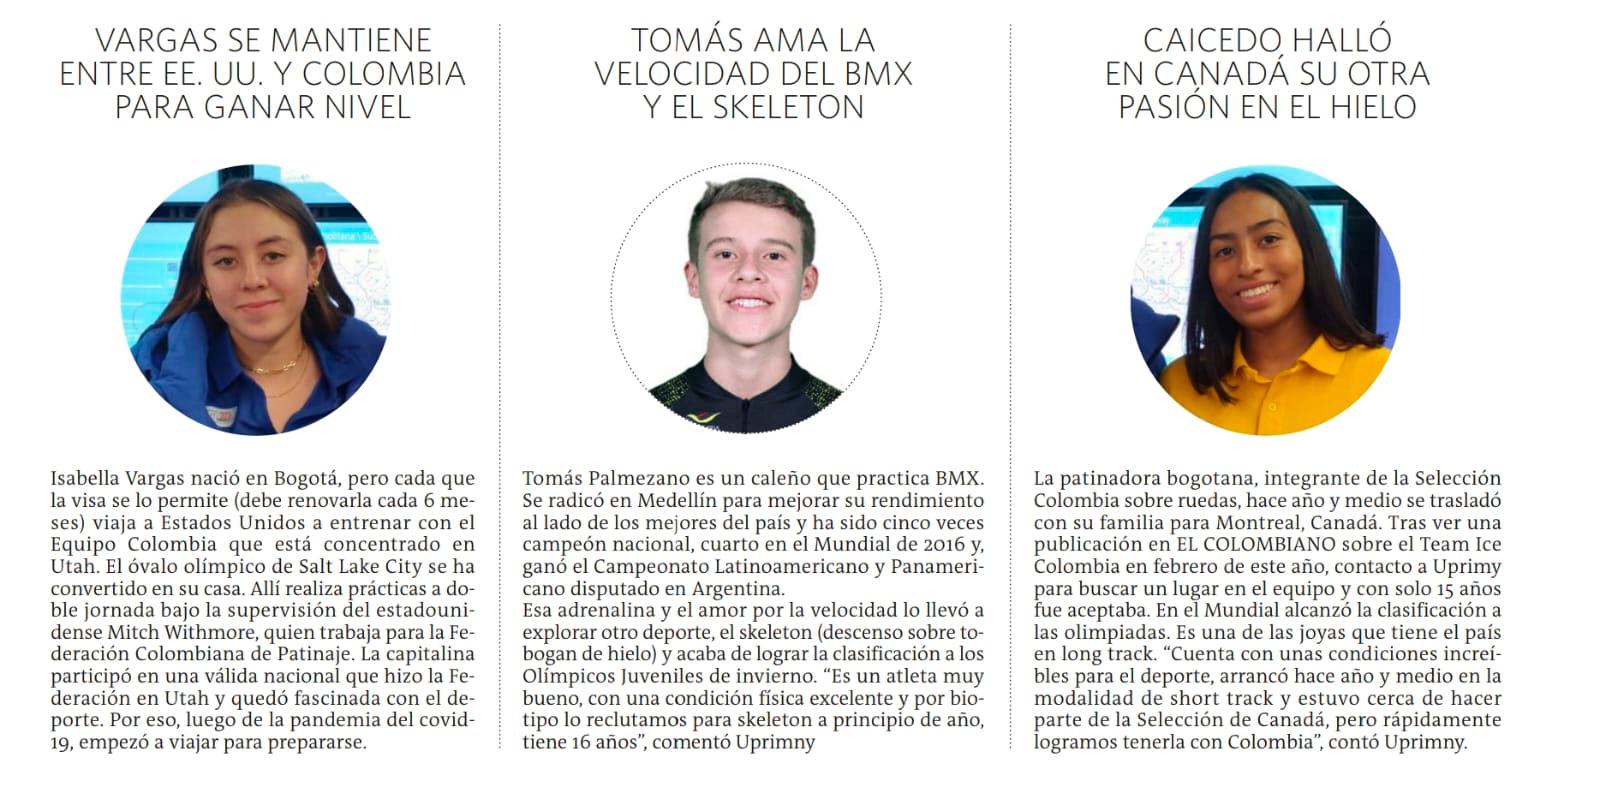 Conozca a los cinco colombianos del Tropical Ice Team que estarán en los Olímpicos juveniles de invierno